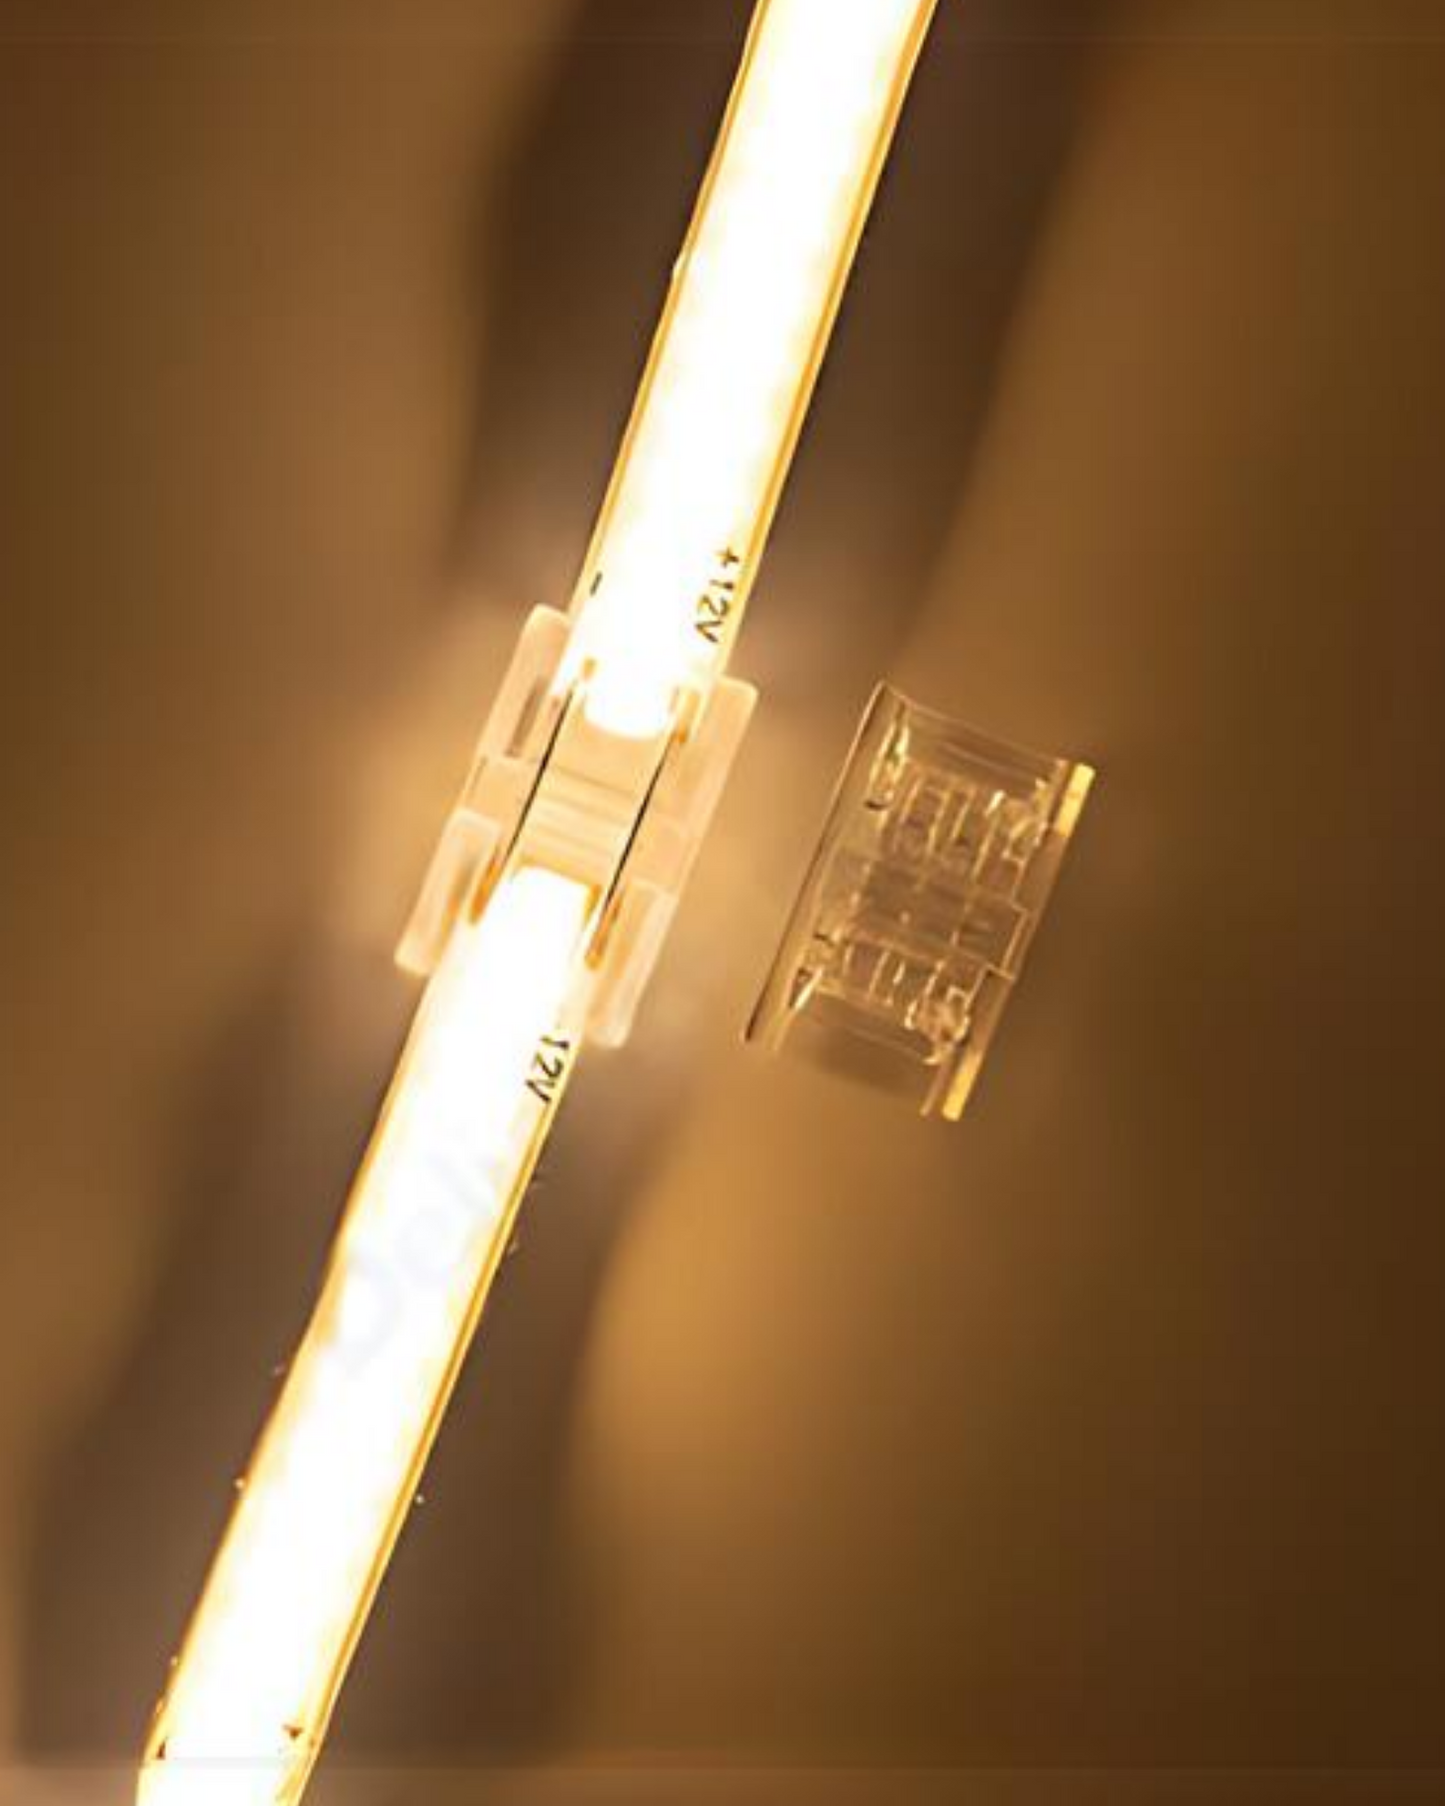 Conector transparente para Tira LED | Cople empalme para Tira de LED 5050